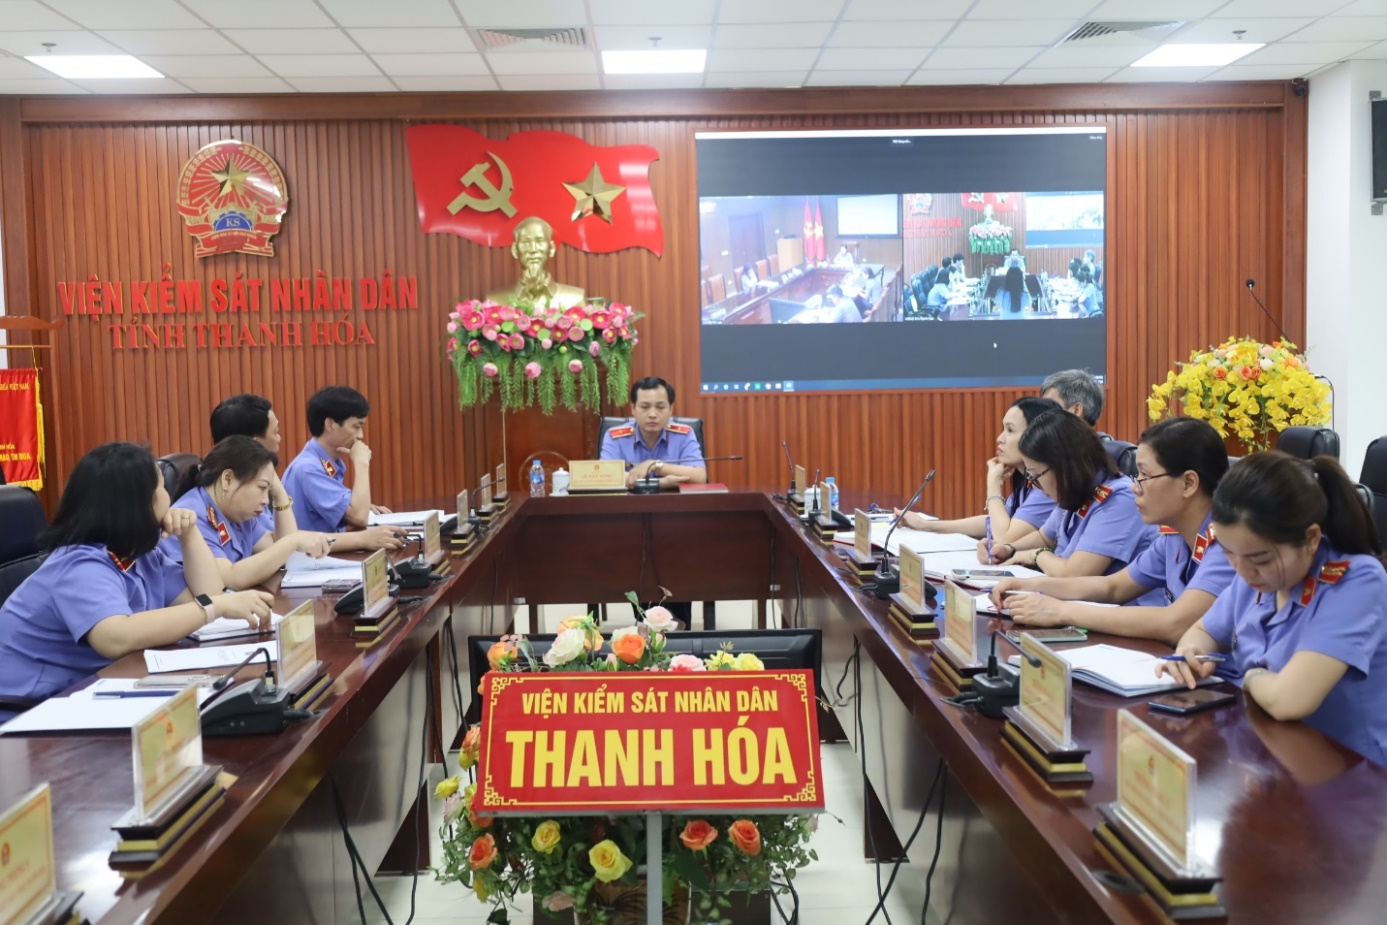 Ảnh: Đồng chí Lê Văn Đông, Viện trưởng VKSND tỉnh Thanh Hóa chủ trì một hội nghị trực tuyến về công tác kiểm sát giải quyết án dân sự